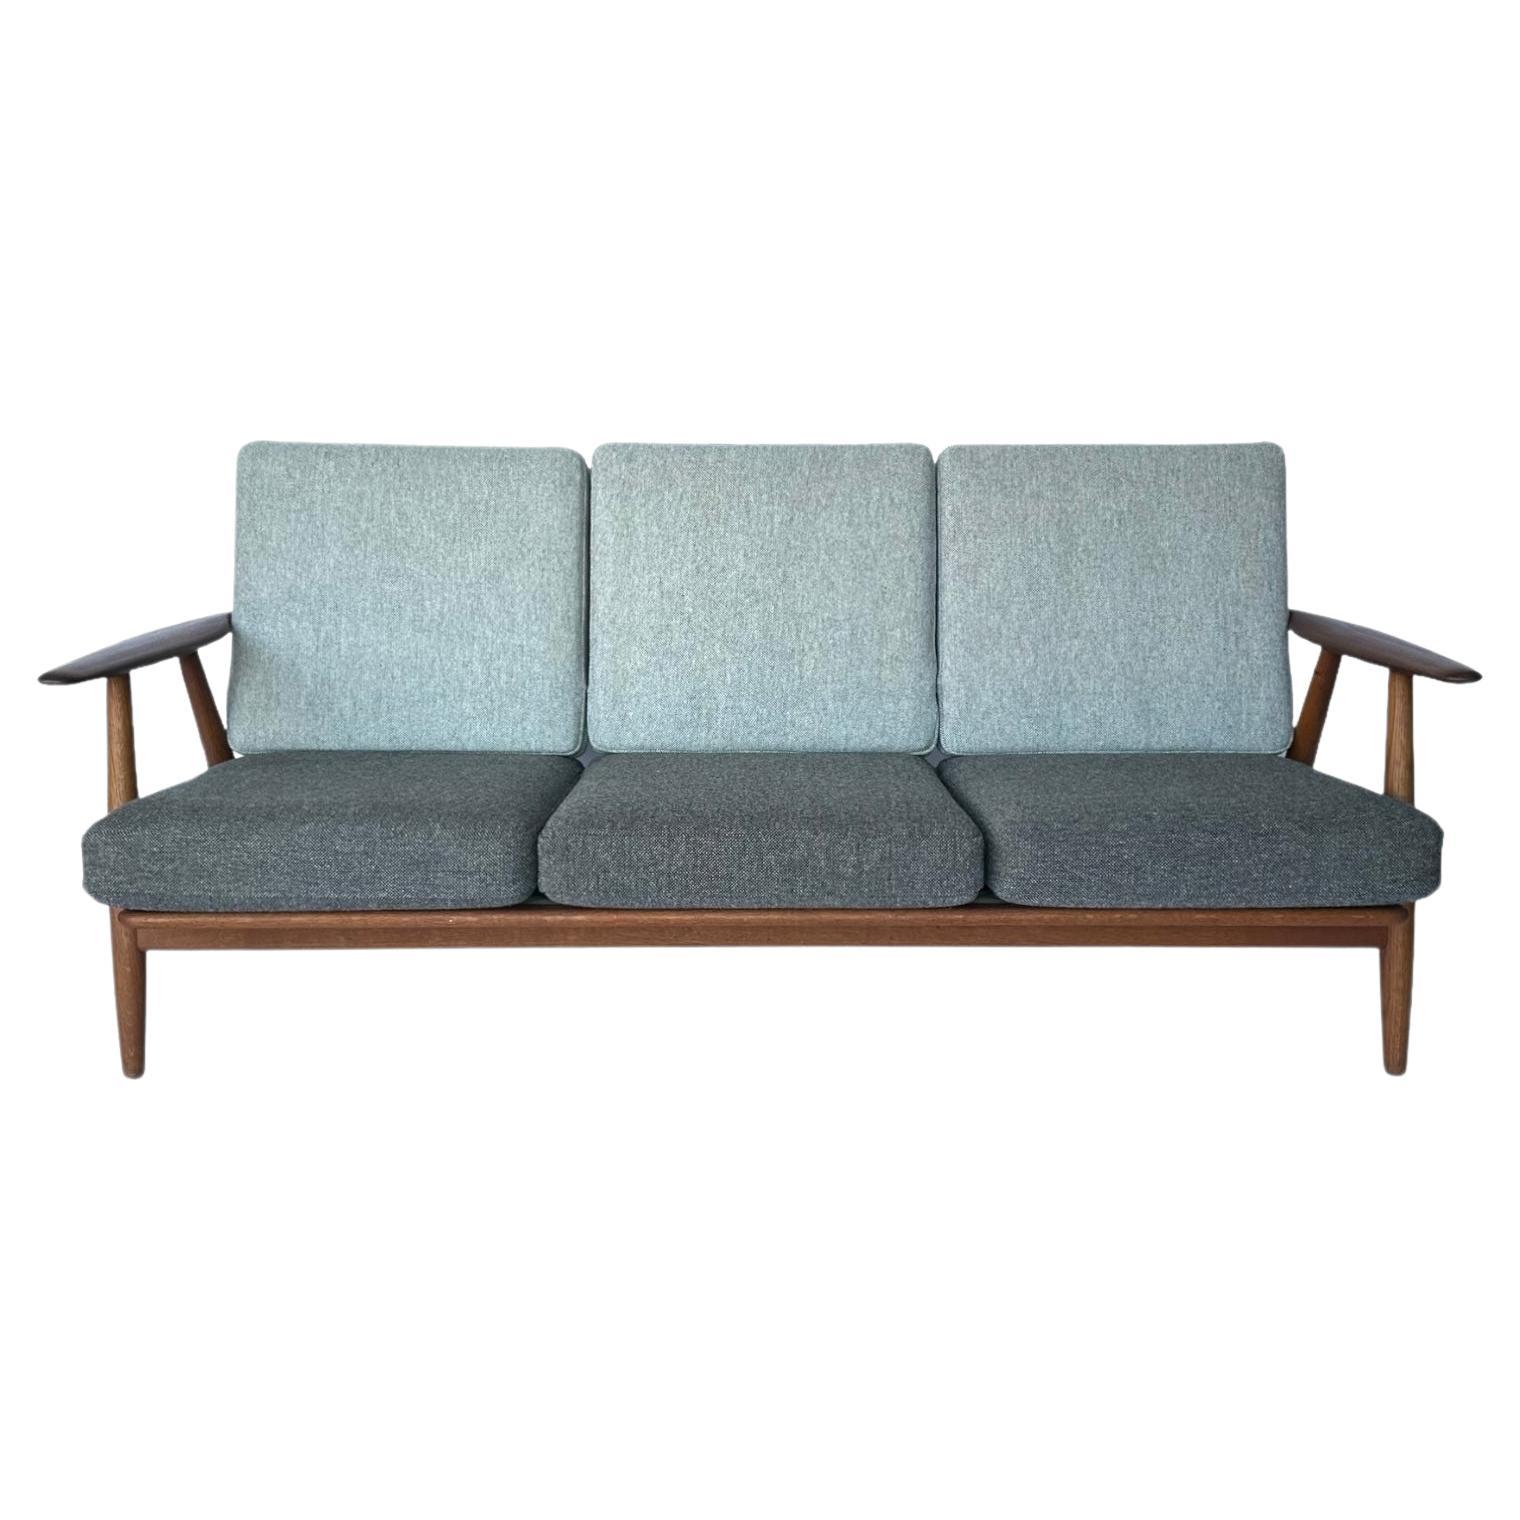 Hans J. Wegner for Getama Signed Sofa with new Mataram Upholstery For Sale